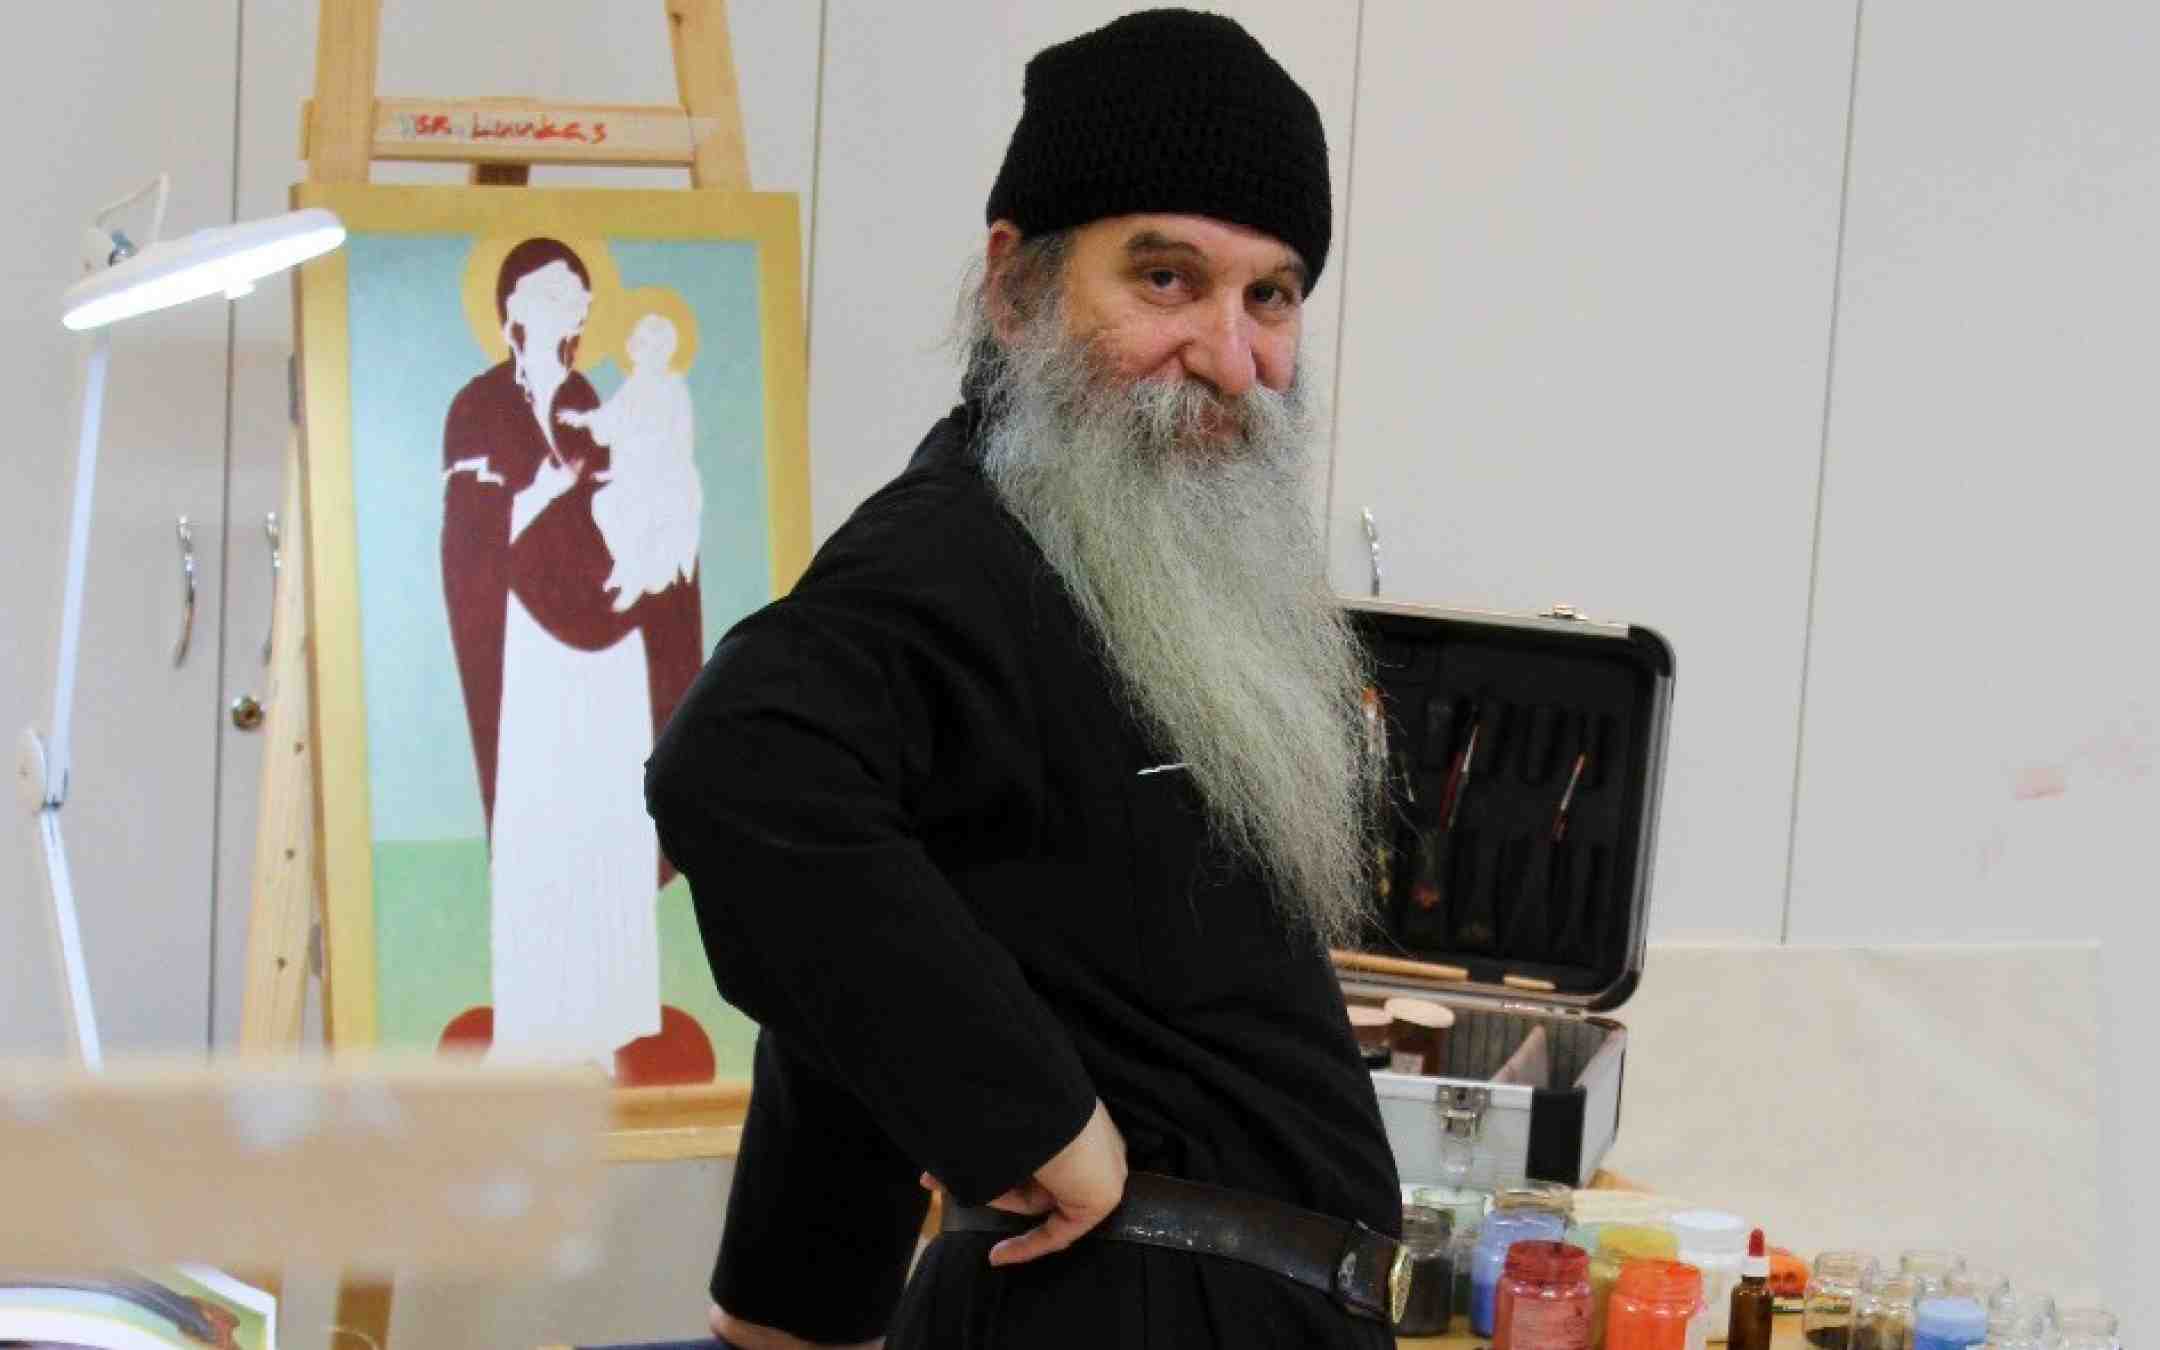 Athosvuoren munkki isä Luukas maalaamassa ikonia Valamon opistossa 2022